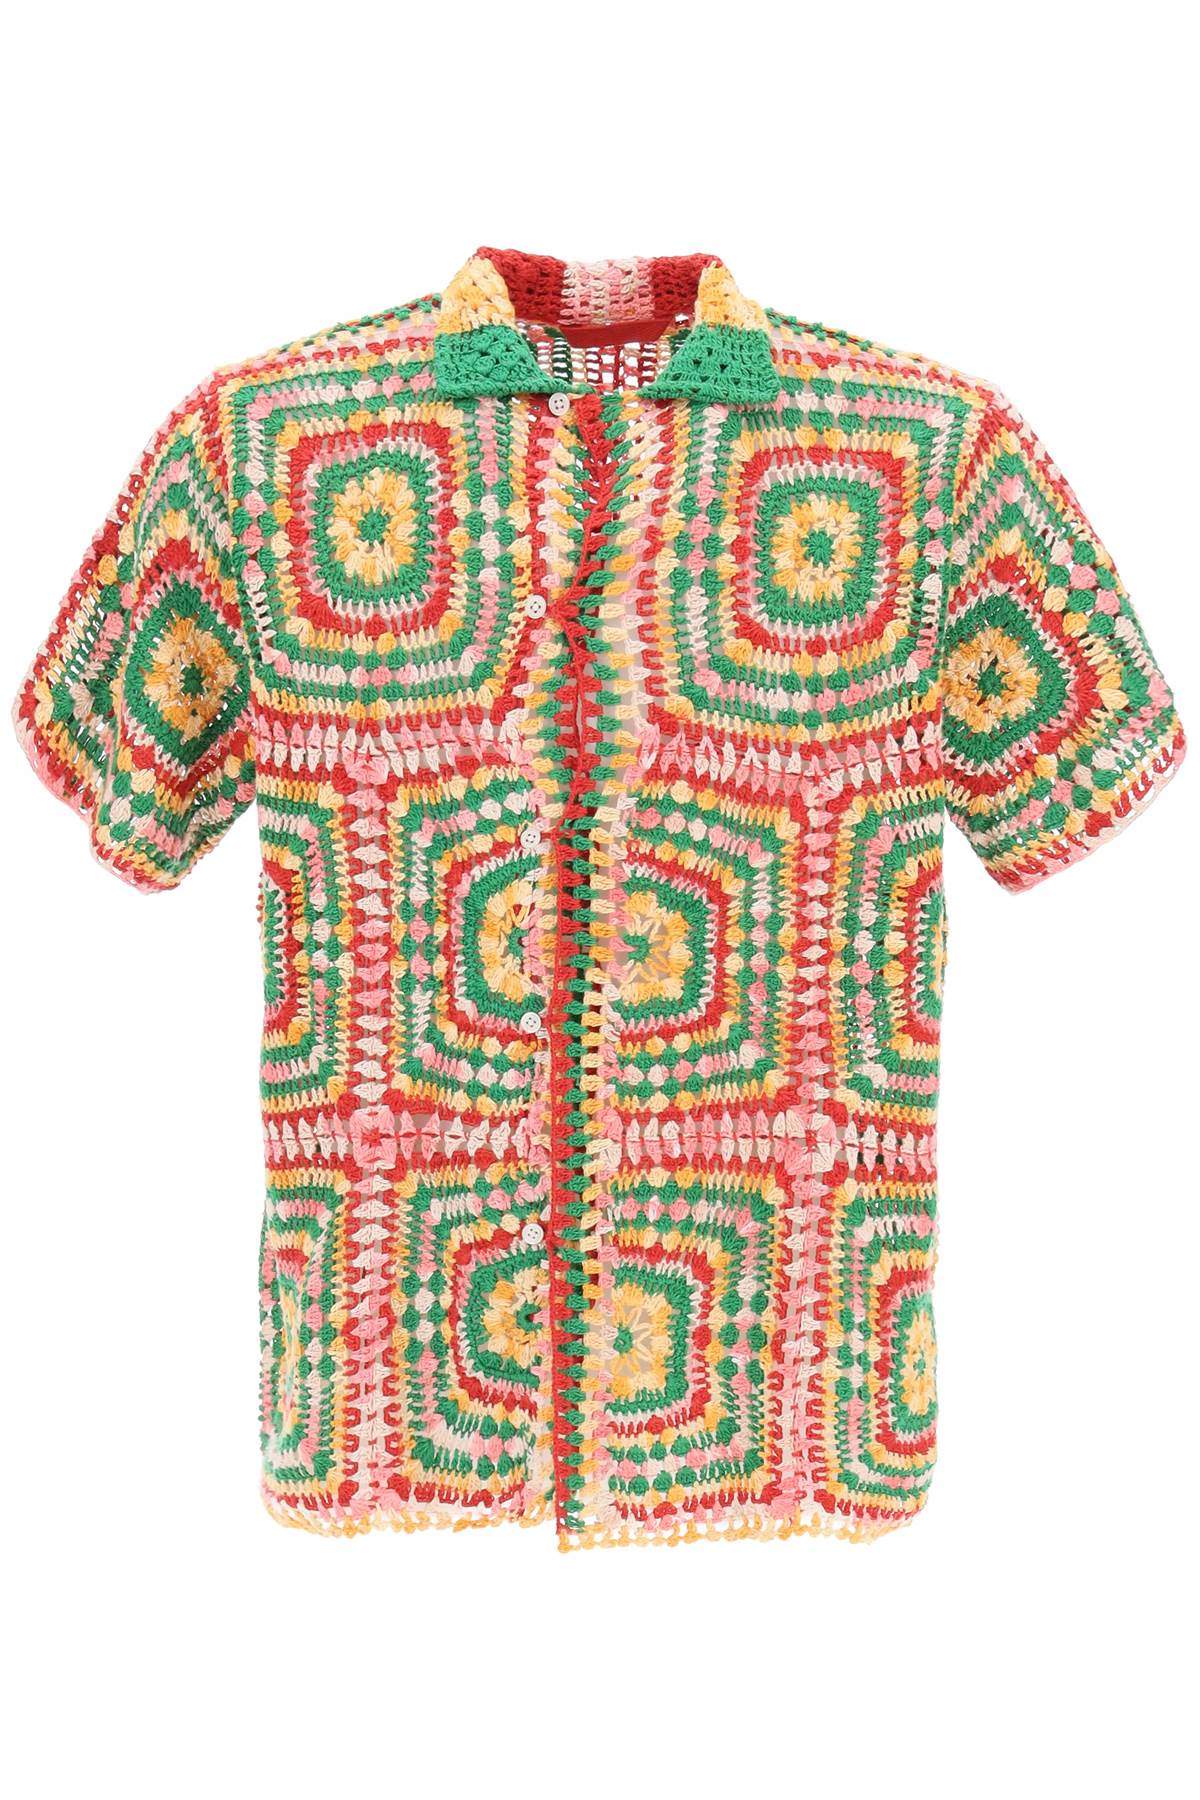 Bode Manchester Crochet Shirt